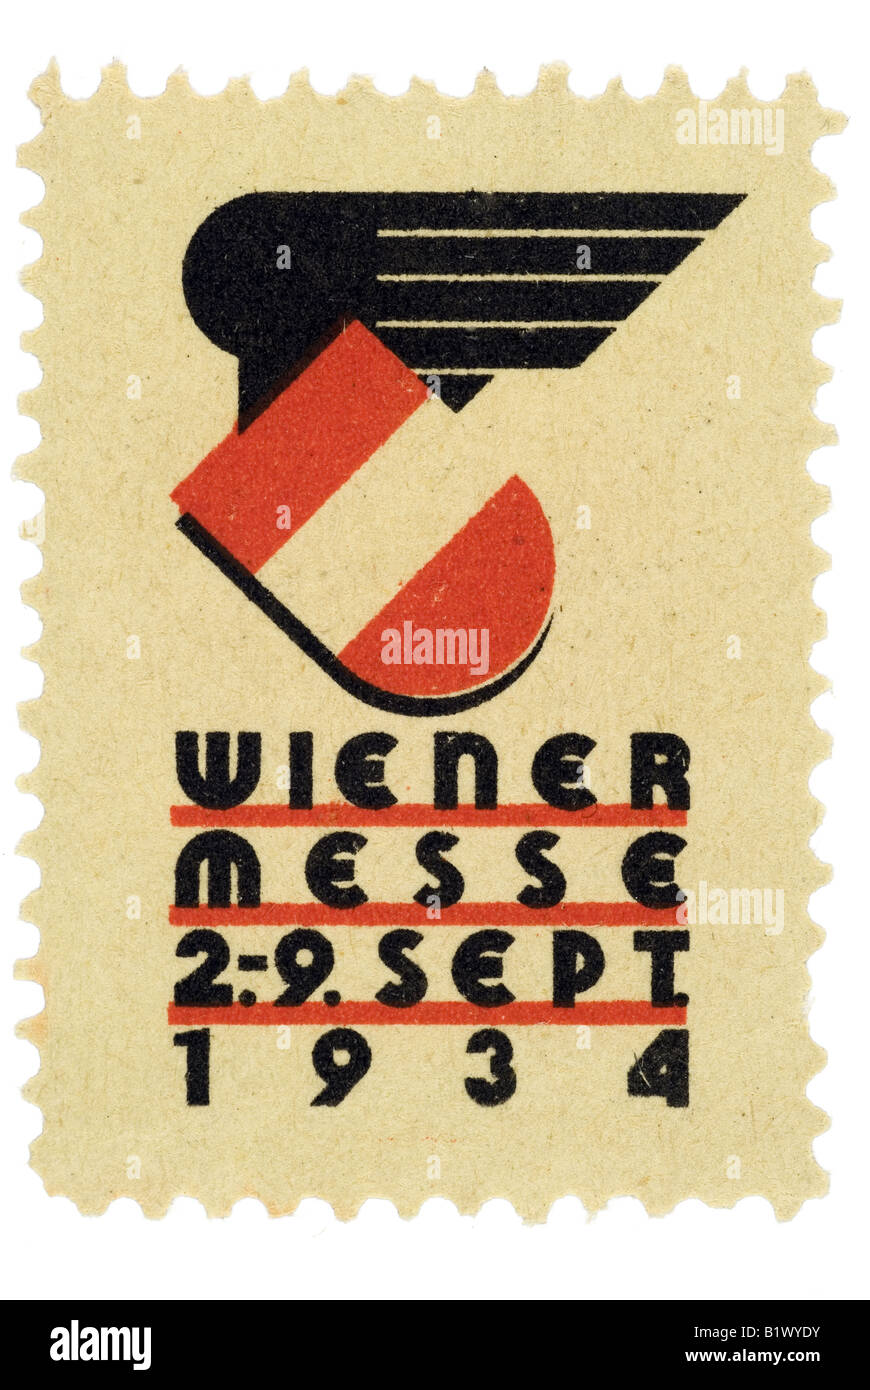 Wiener Messe 2.-.9. Sept. 1934 Stock Photo